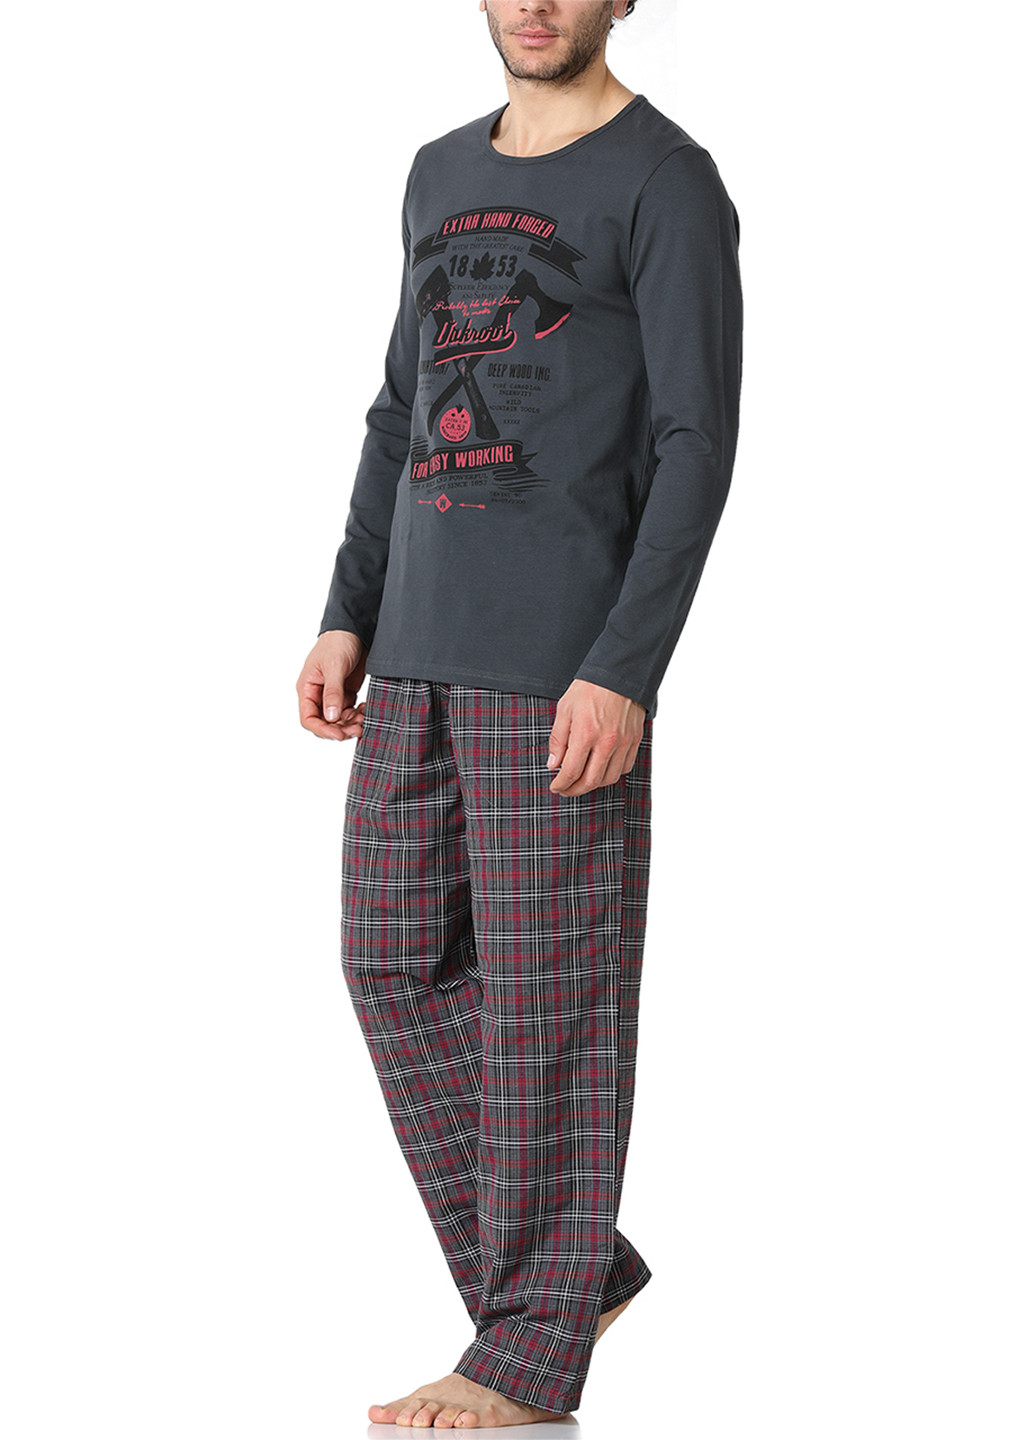 Пижама (лонгслив, брюки) DoReMi лонгслив + брюки рисунок тёмно-серая домашняя хлопок